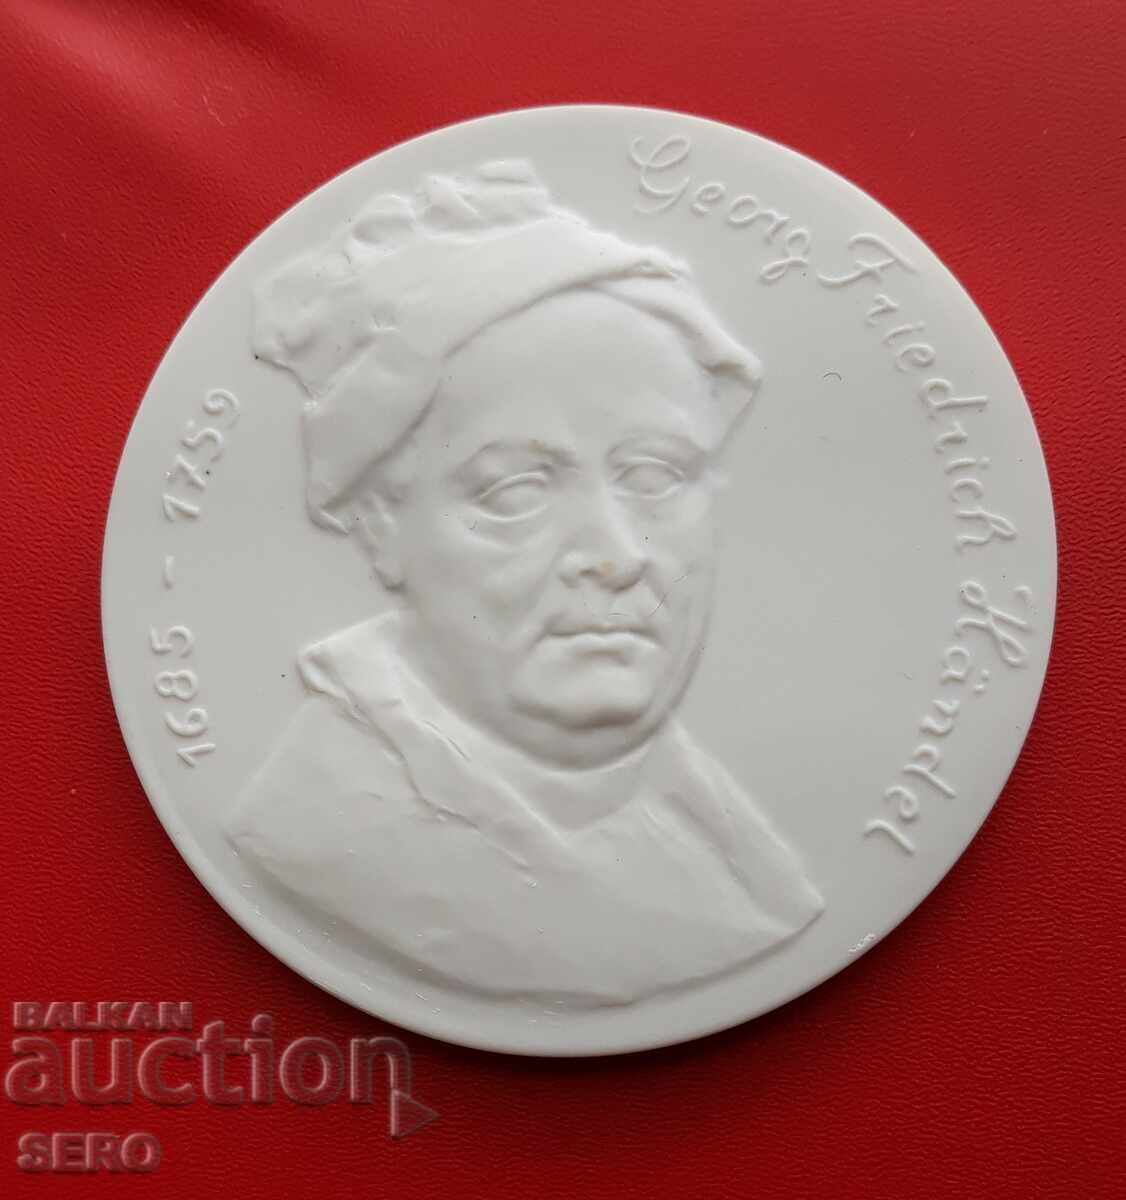 Germany-GDR-Large Porcelain Medal-Handel-Composer